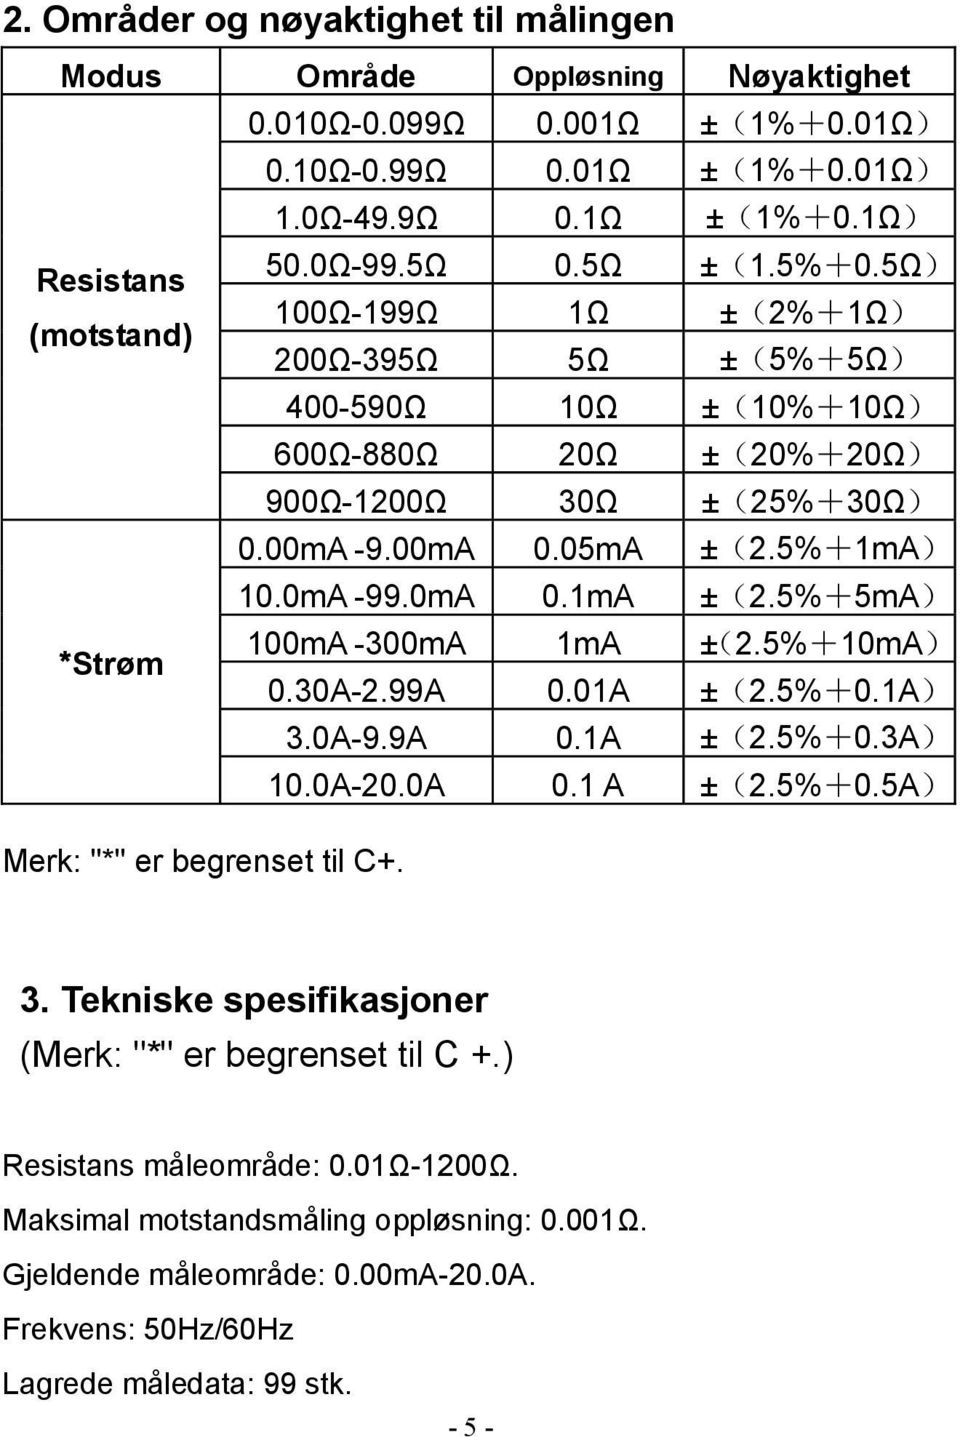 5%+5mA) *Strøm 100mA -300mA 1mA ±(2.5%+10mA) 0.30A-2.99A 0.01A ±(2.5%+0.1A) 3.0A-9.9A 0.1A ±(2.5%+0.3A) 10.0A-20.0A 0.1 A ±(2.5%+0.5A) Merk: "*" er begrenset til C+. 3. Tekniske spesifikasjoner (Merk: "*" er begrenset til C +.